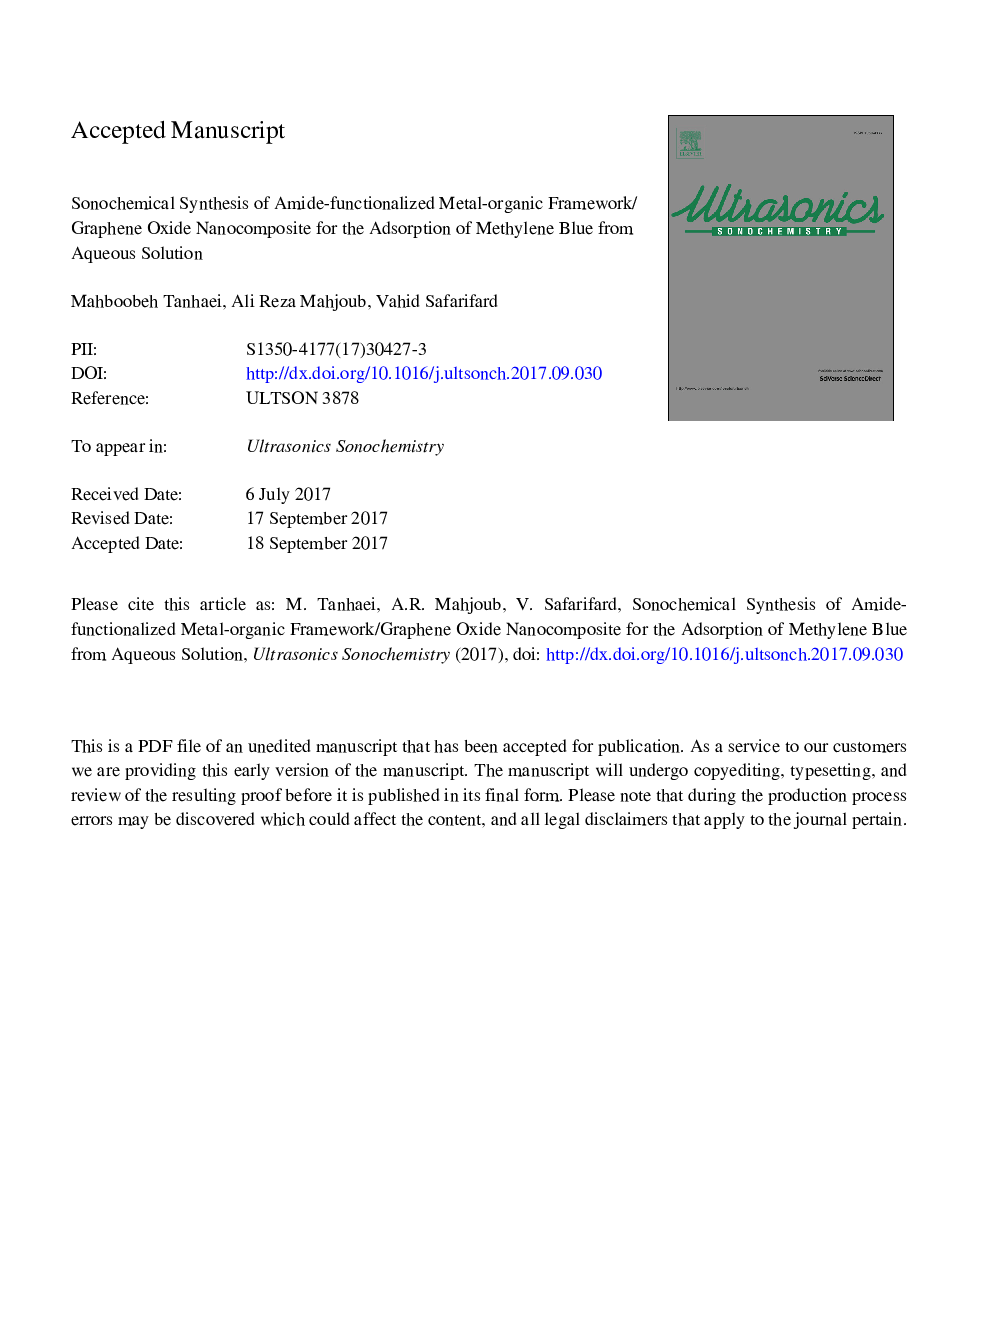 سنتز سونو شیمیایی نانوکامپوزیت اکسید گرافین-آمید-عامل زده شده برای جذب متیلن آبی از محلول آبی